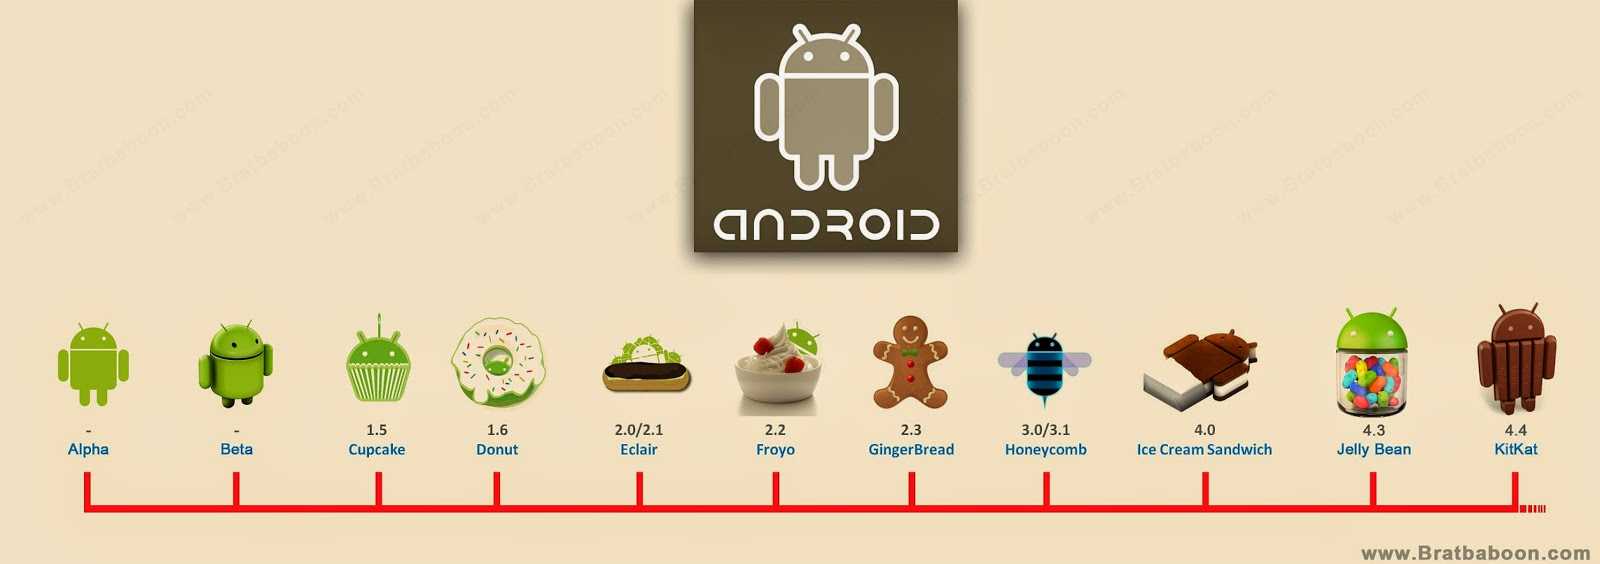 Не секрет, что характеристики смартфонов под управлением операционной системы Android растут как на дрожжах К примеру, в уже далеком 2010 году флагман южнок